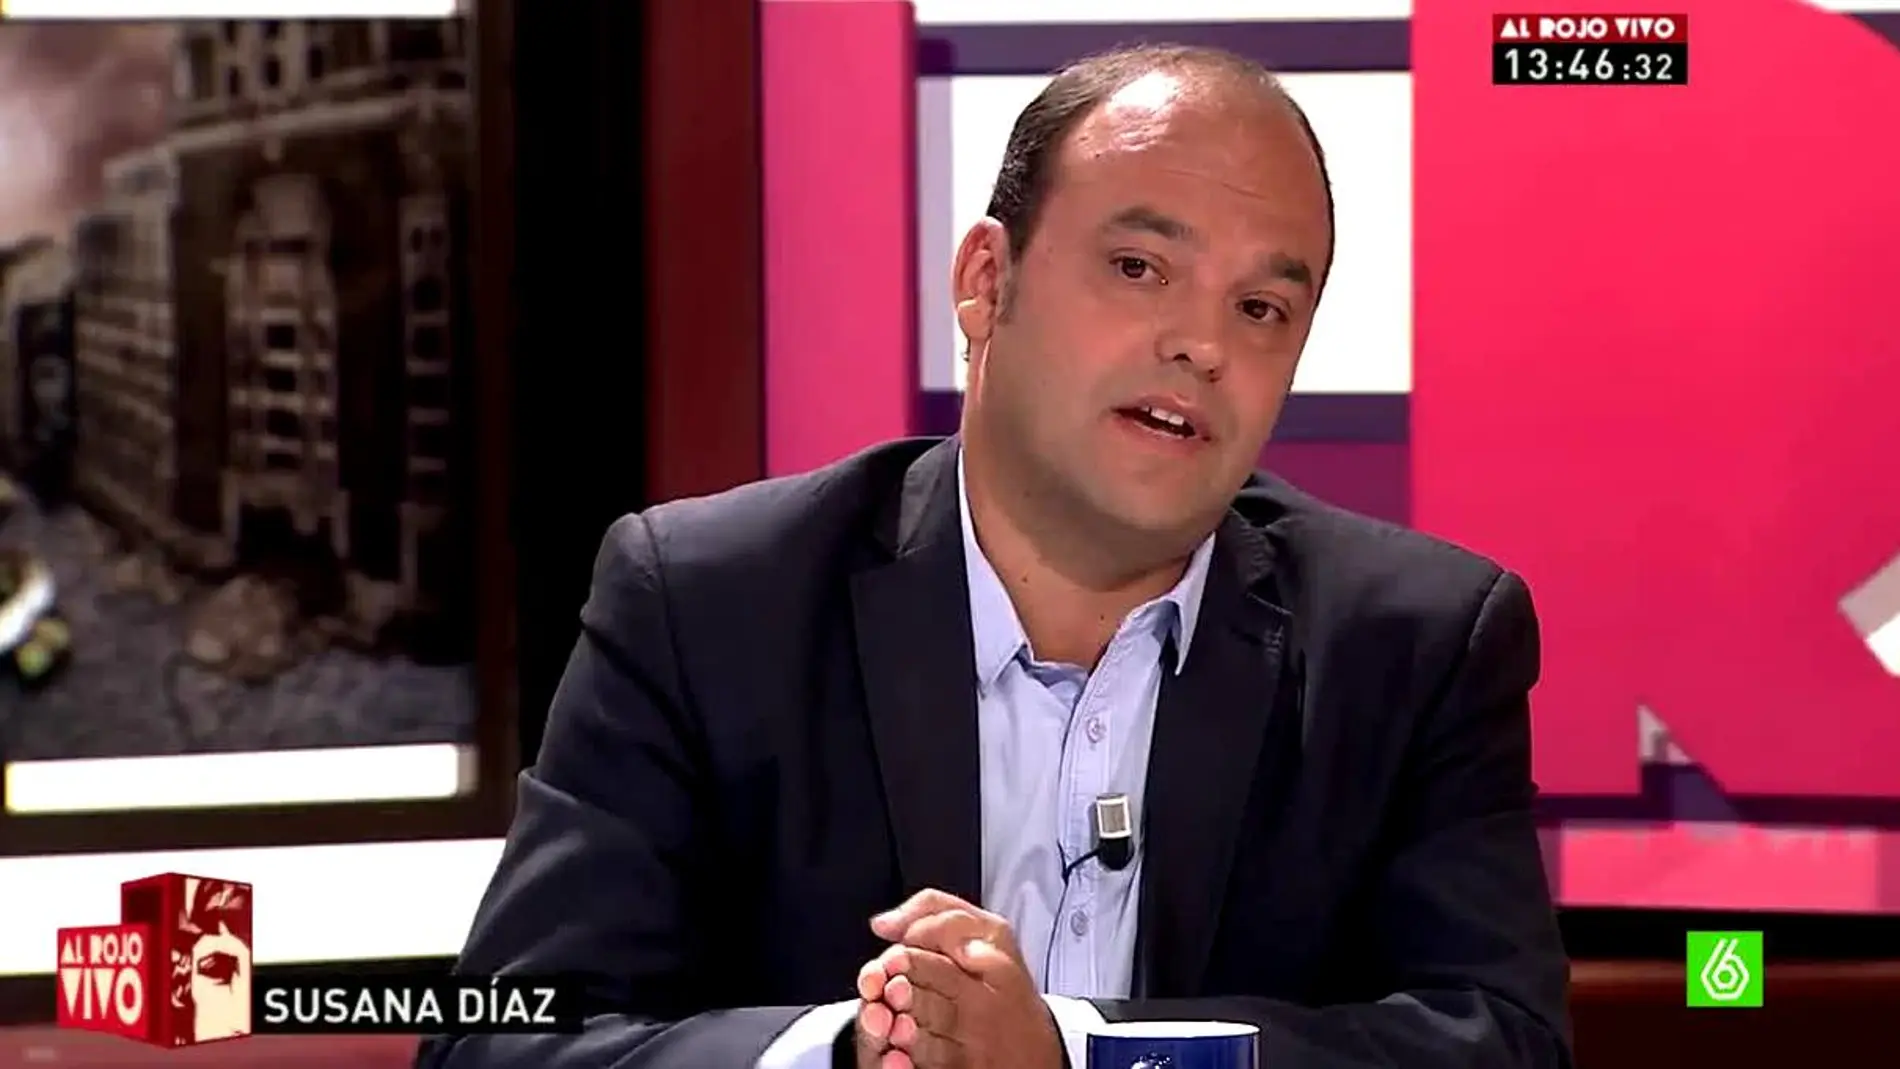 José Carlos Díez